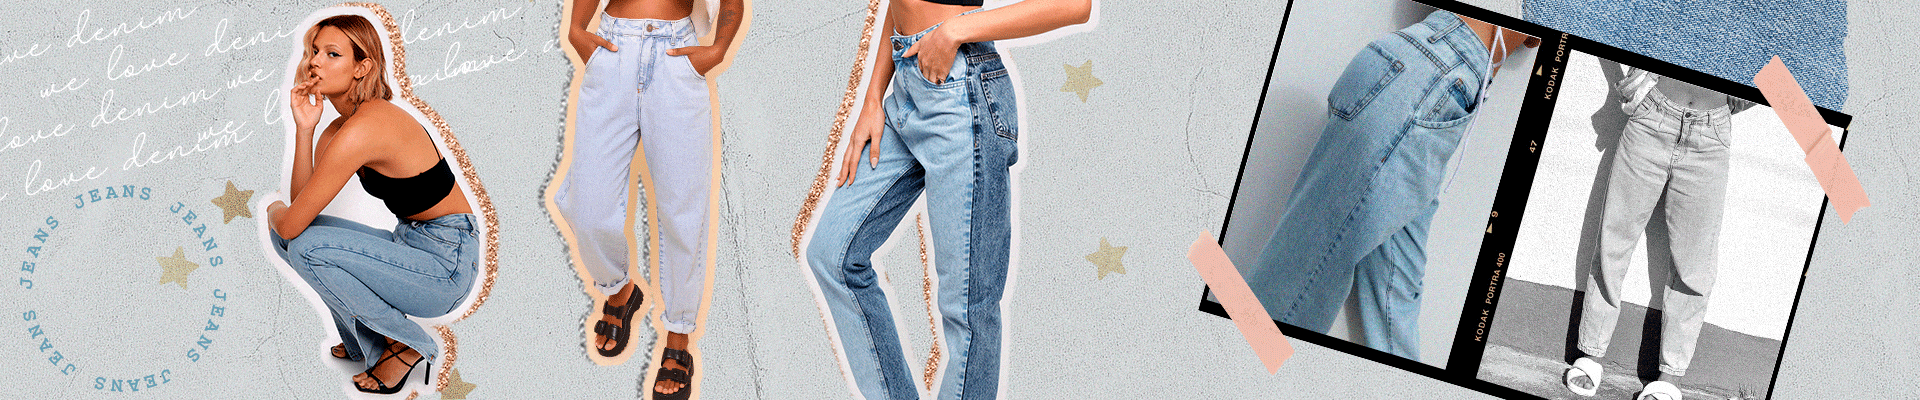 jeans - desktop